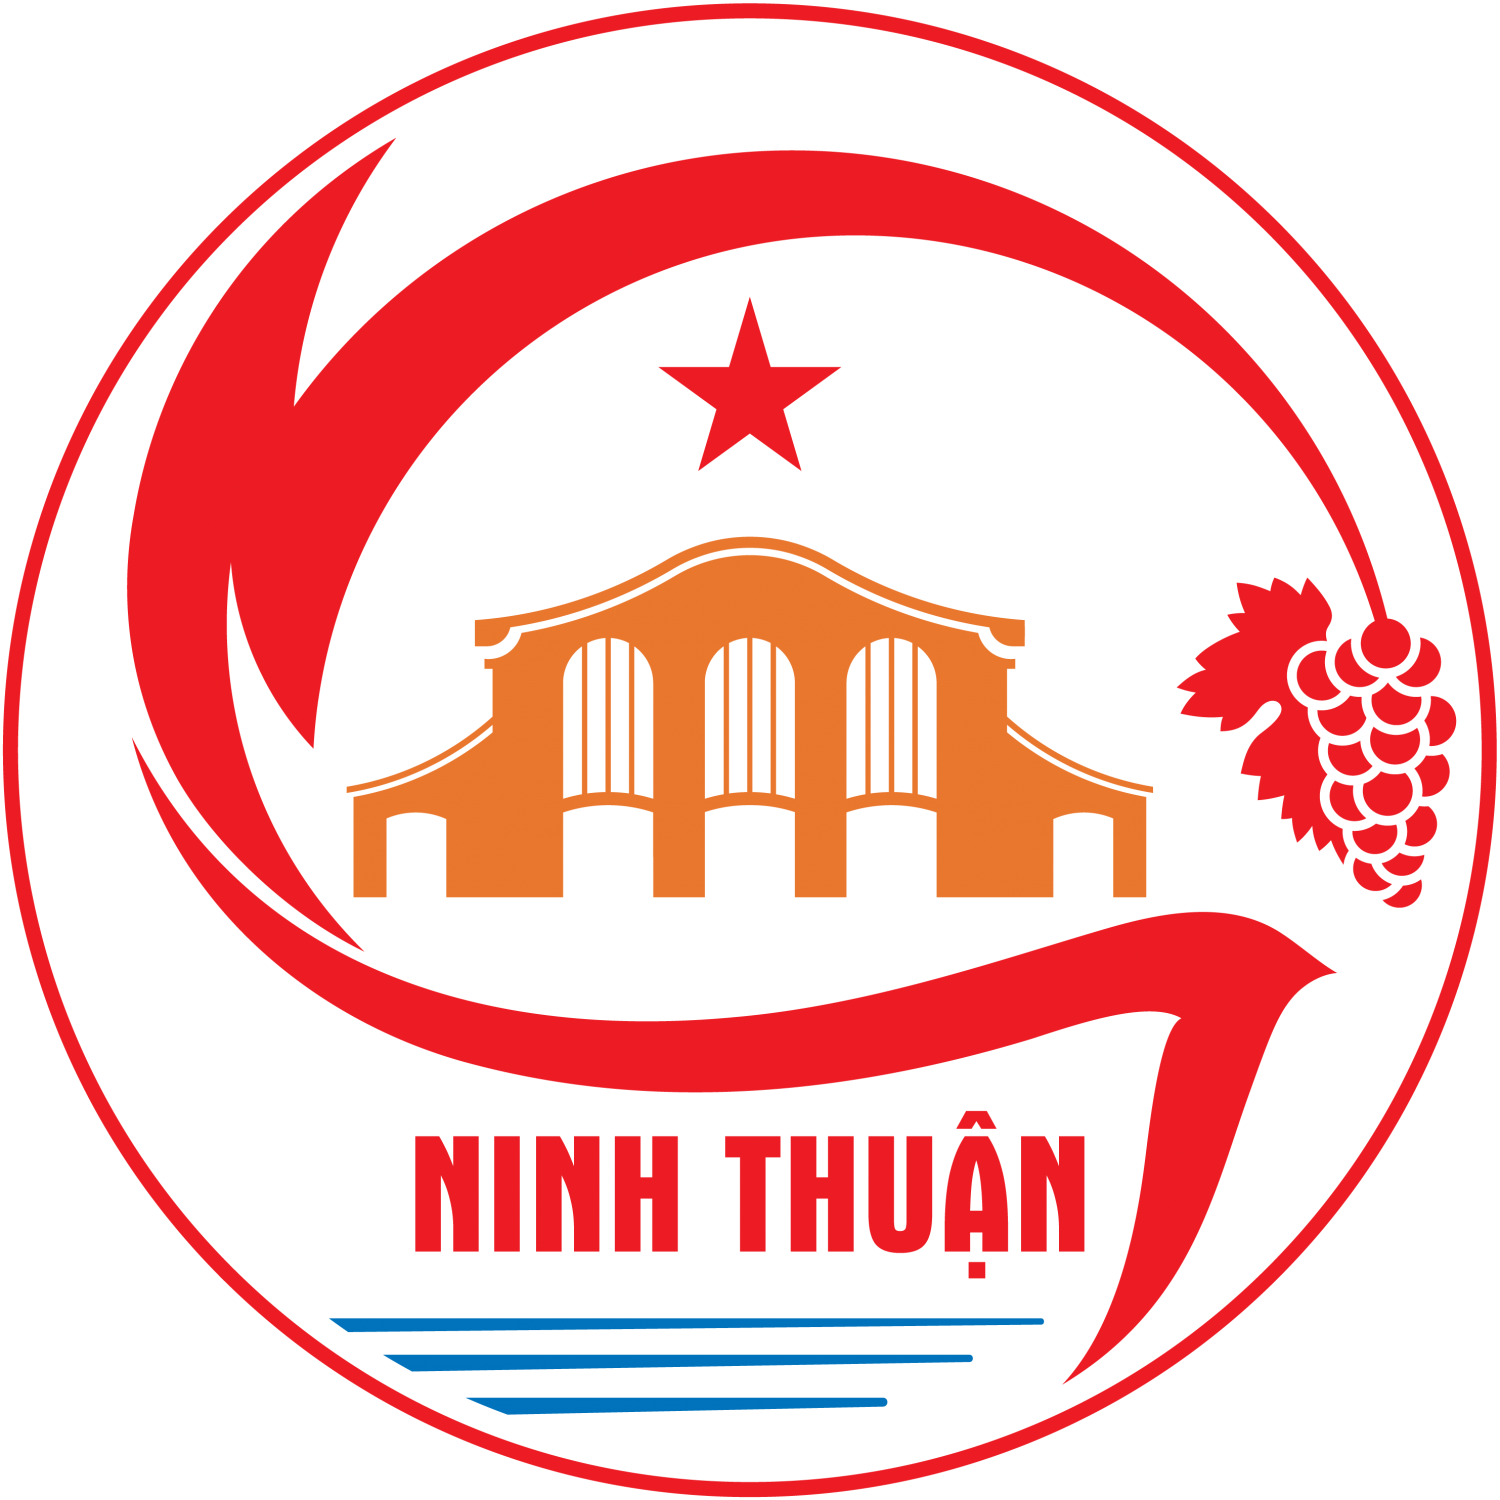 ITTC Ninh Thuận